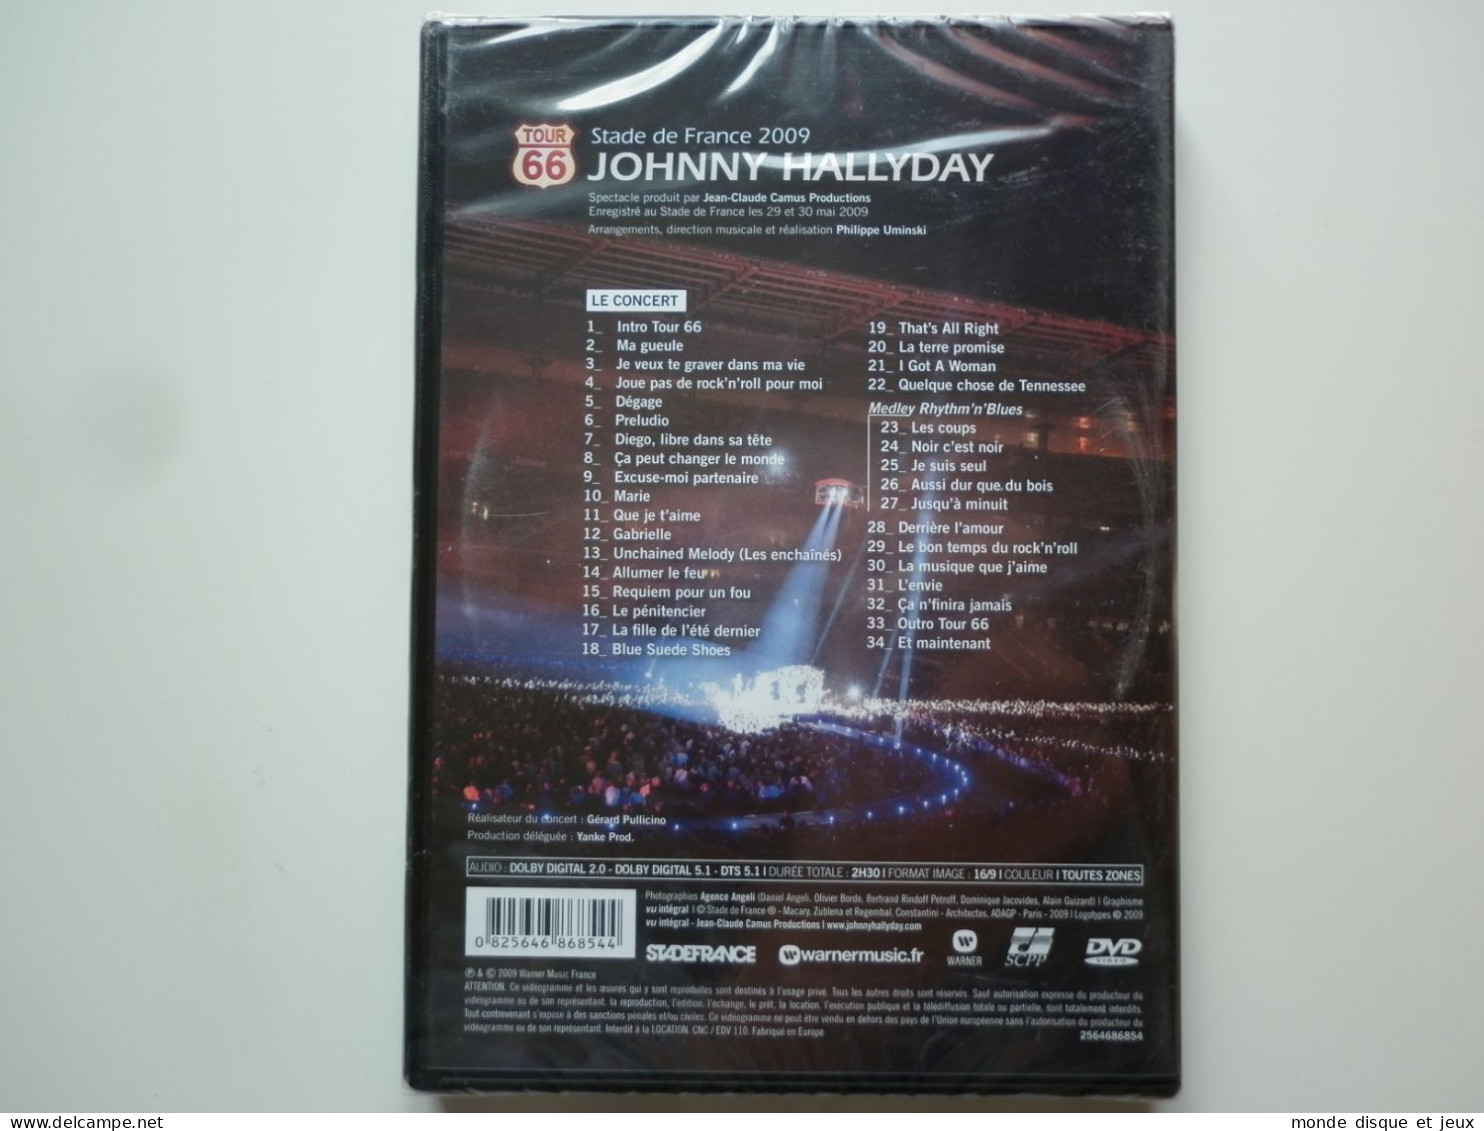 Johnny Hallyday Dvd Stade De France 2009 Tour 66 - Muziek DVD's